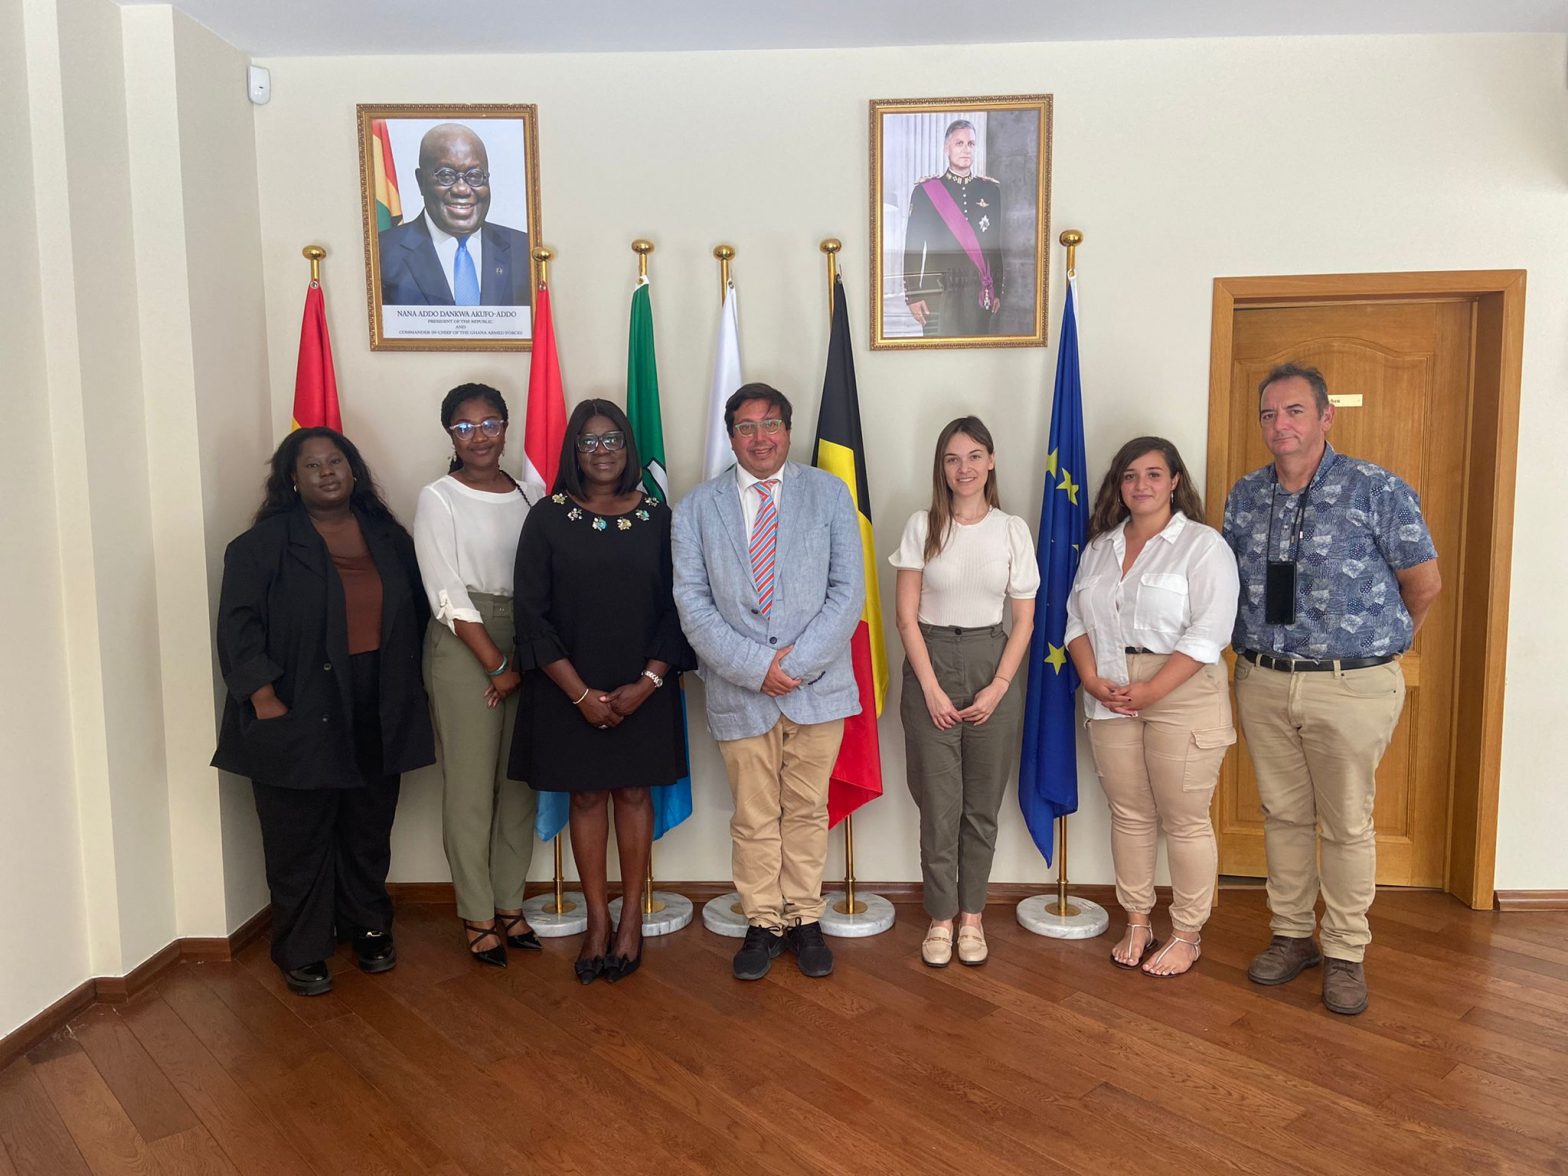 La Fundación Finnova y la embajada de Ghana en Bélgica renuevan su compromiso de colaboración en materia de emprendimiento, innovación y fondos europeos